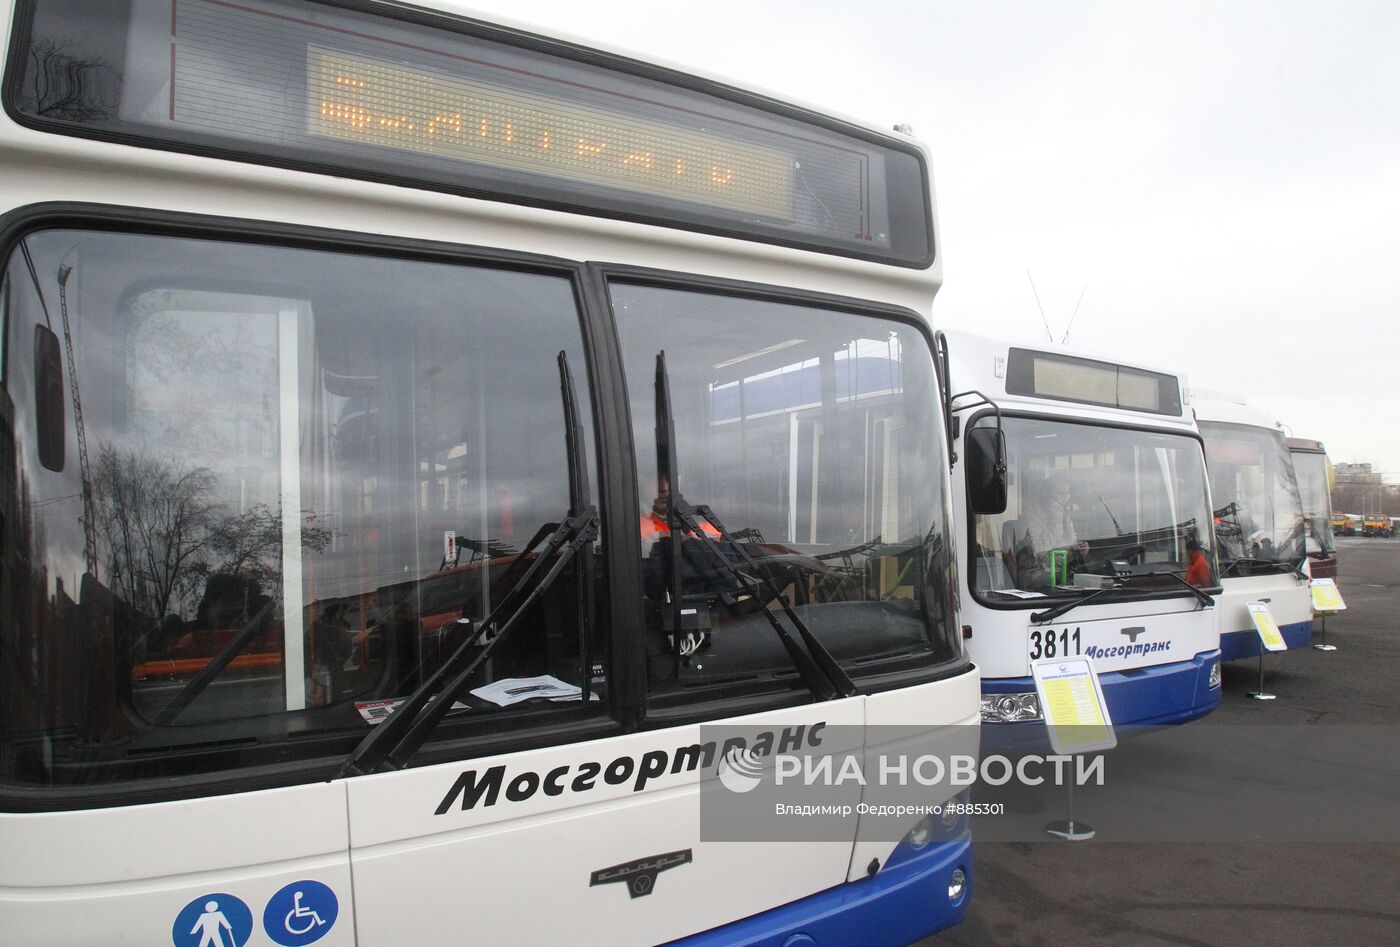 Низкопольный троллейбус "СВАРЗ 623501"